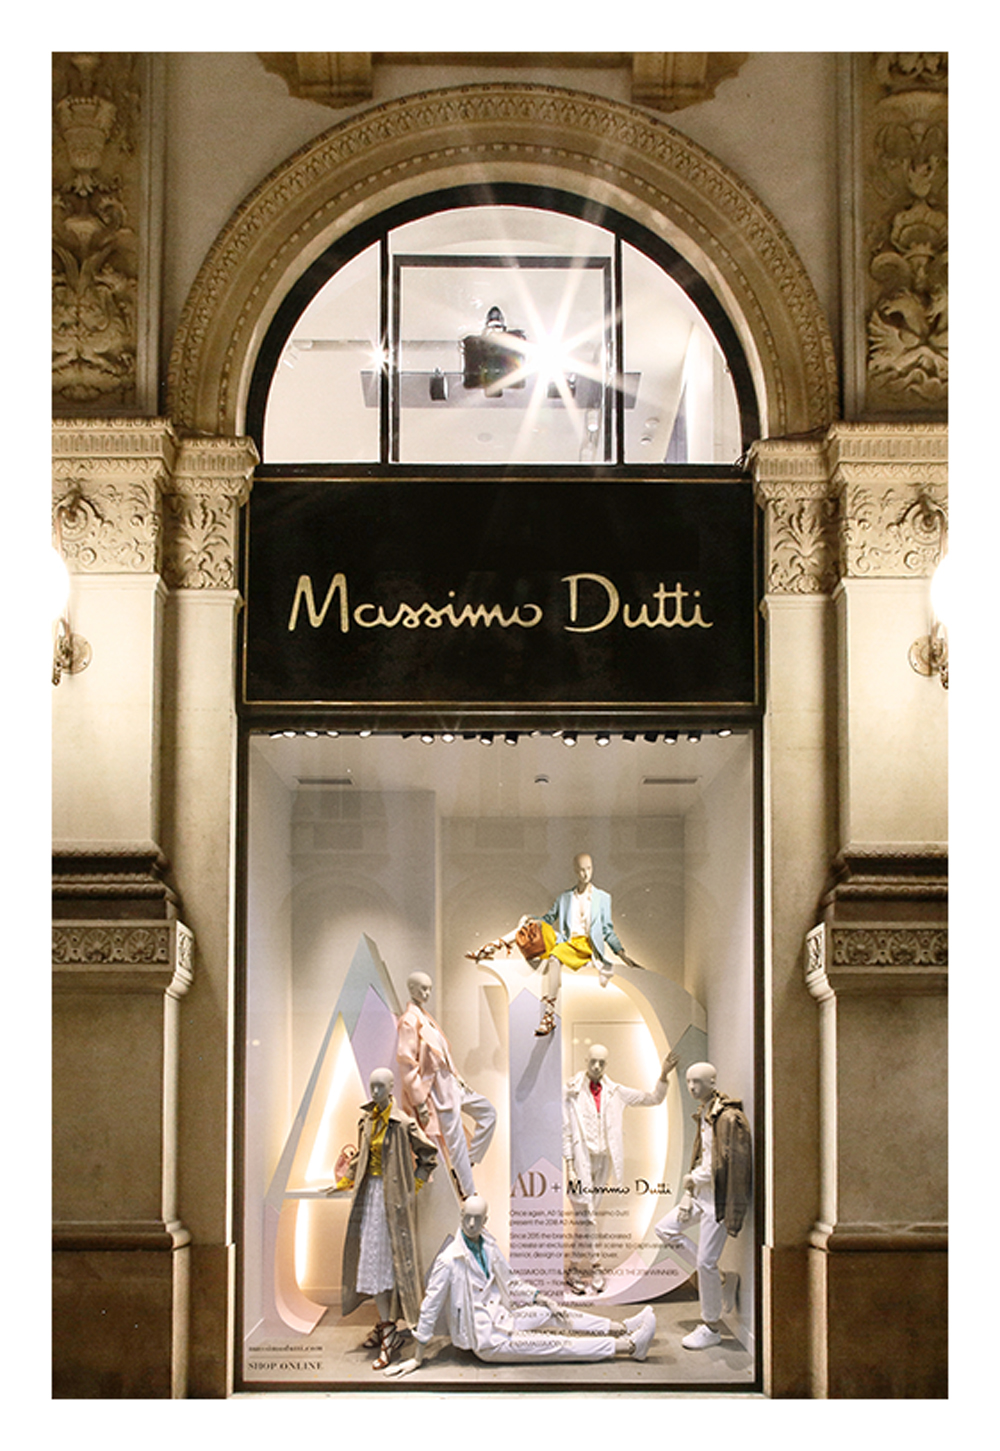 Massimo Dutti & AD